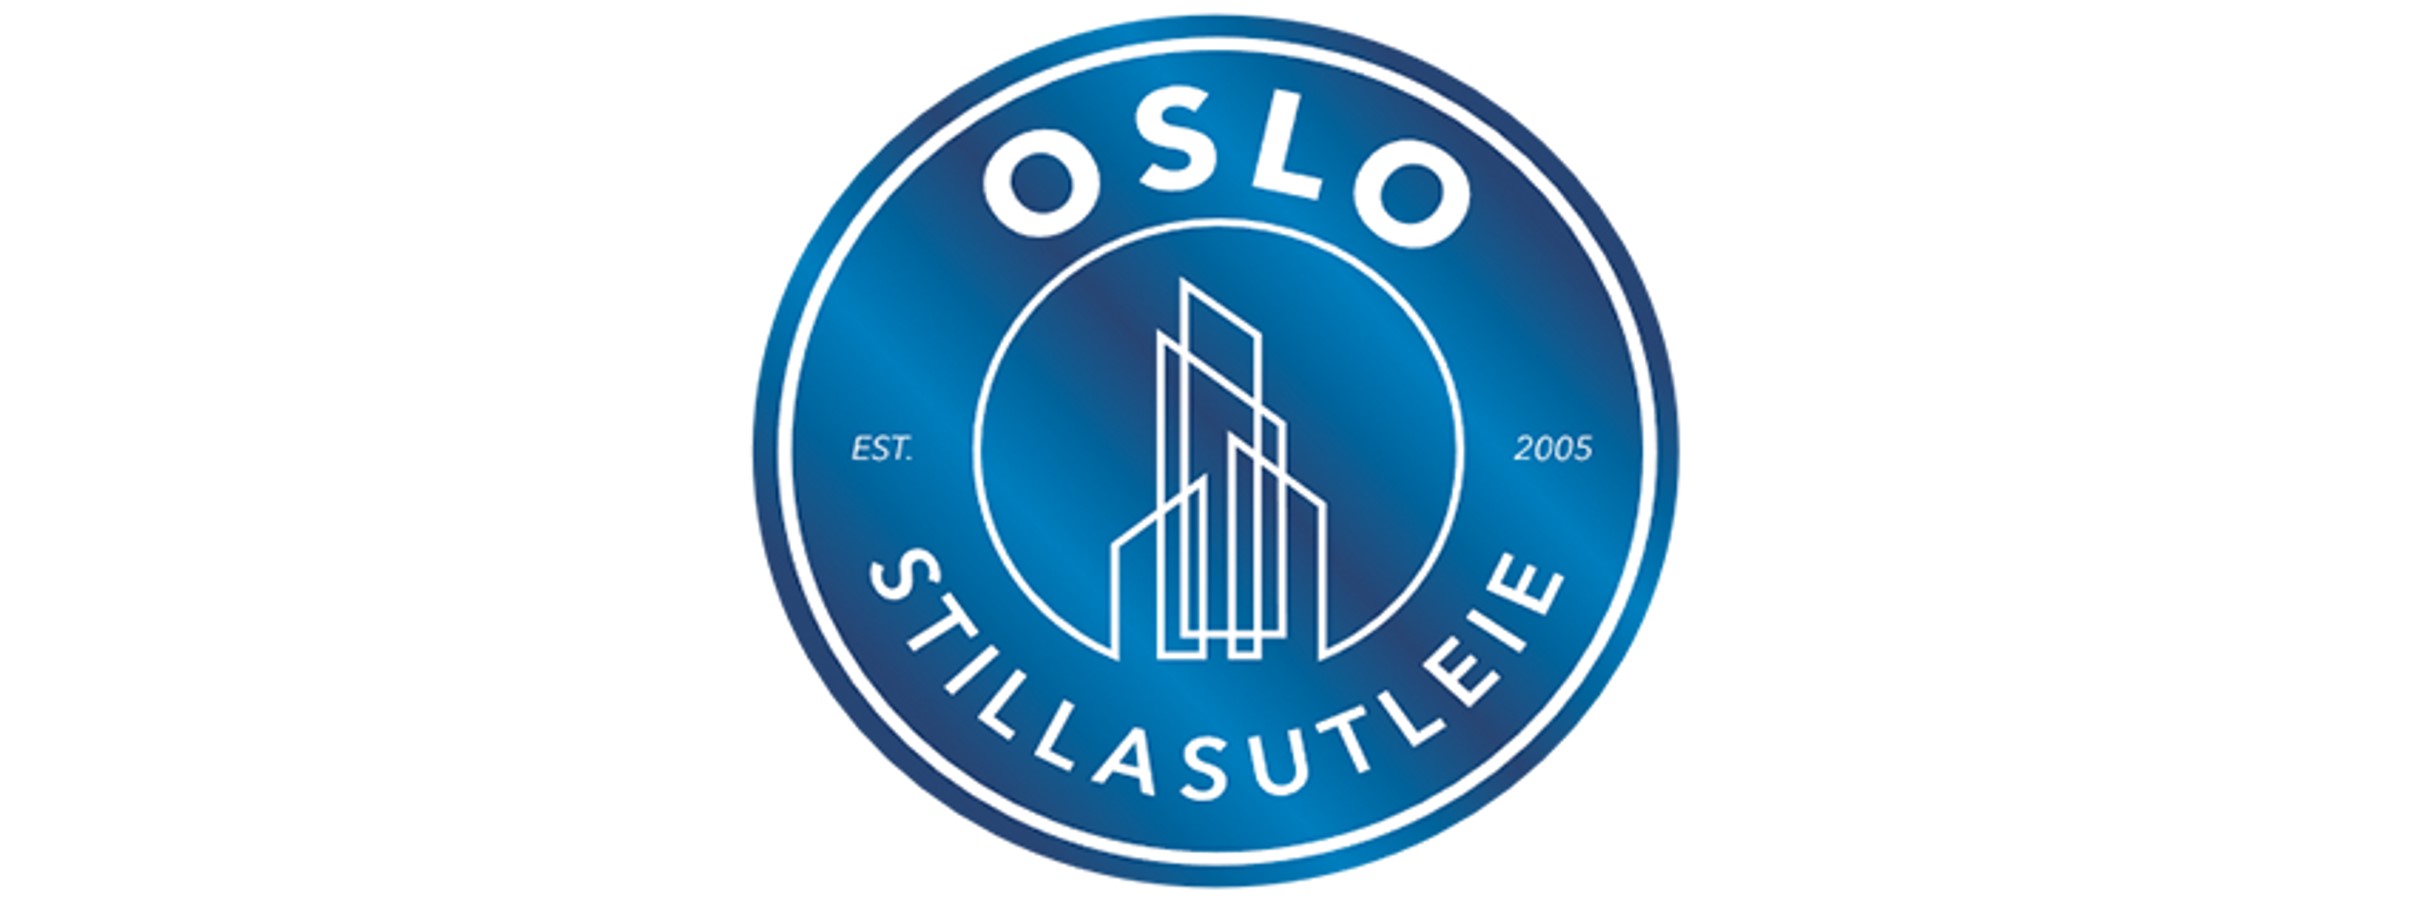 Oslo Stilasutleie